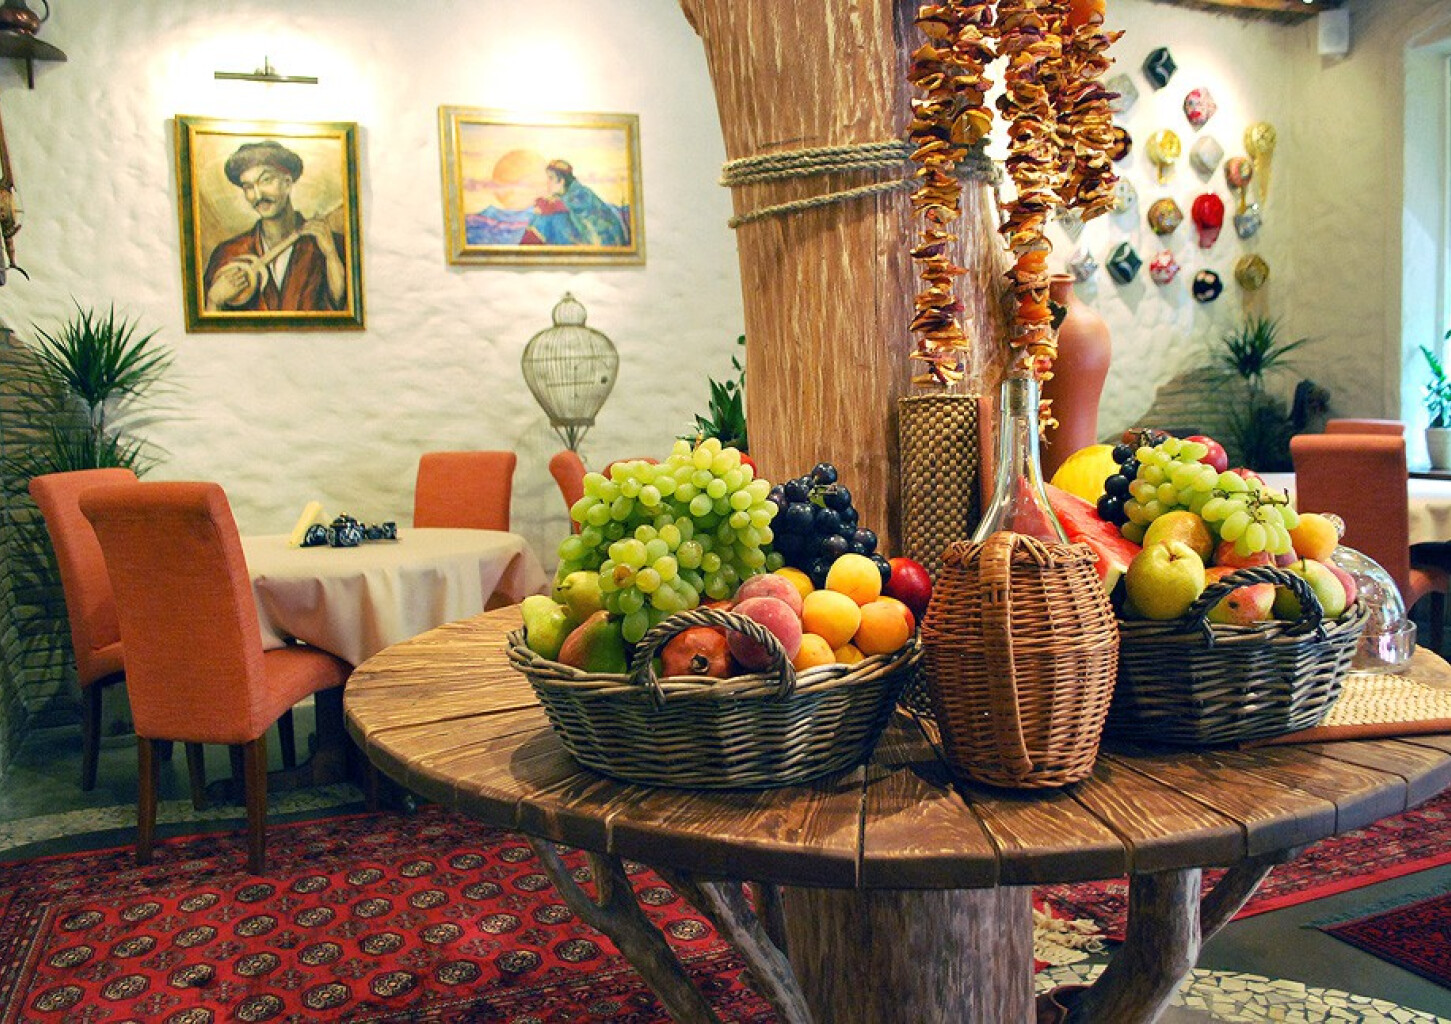 Вкусные блюда в ресторане « TaškentA» в Риге или Юрмале